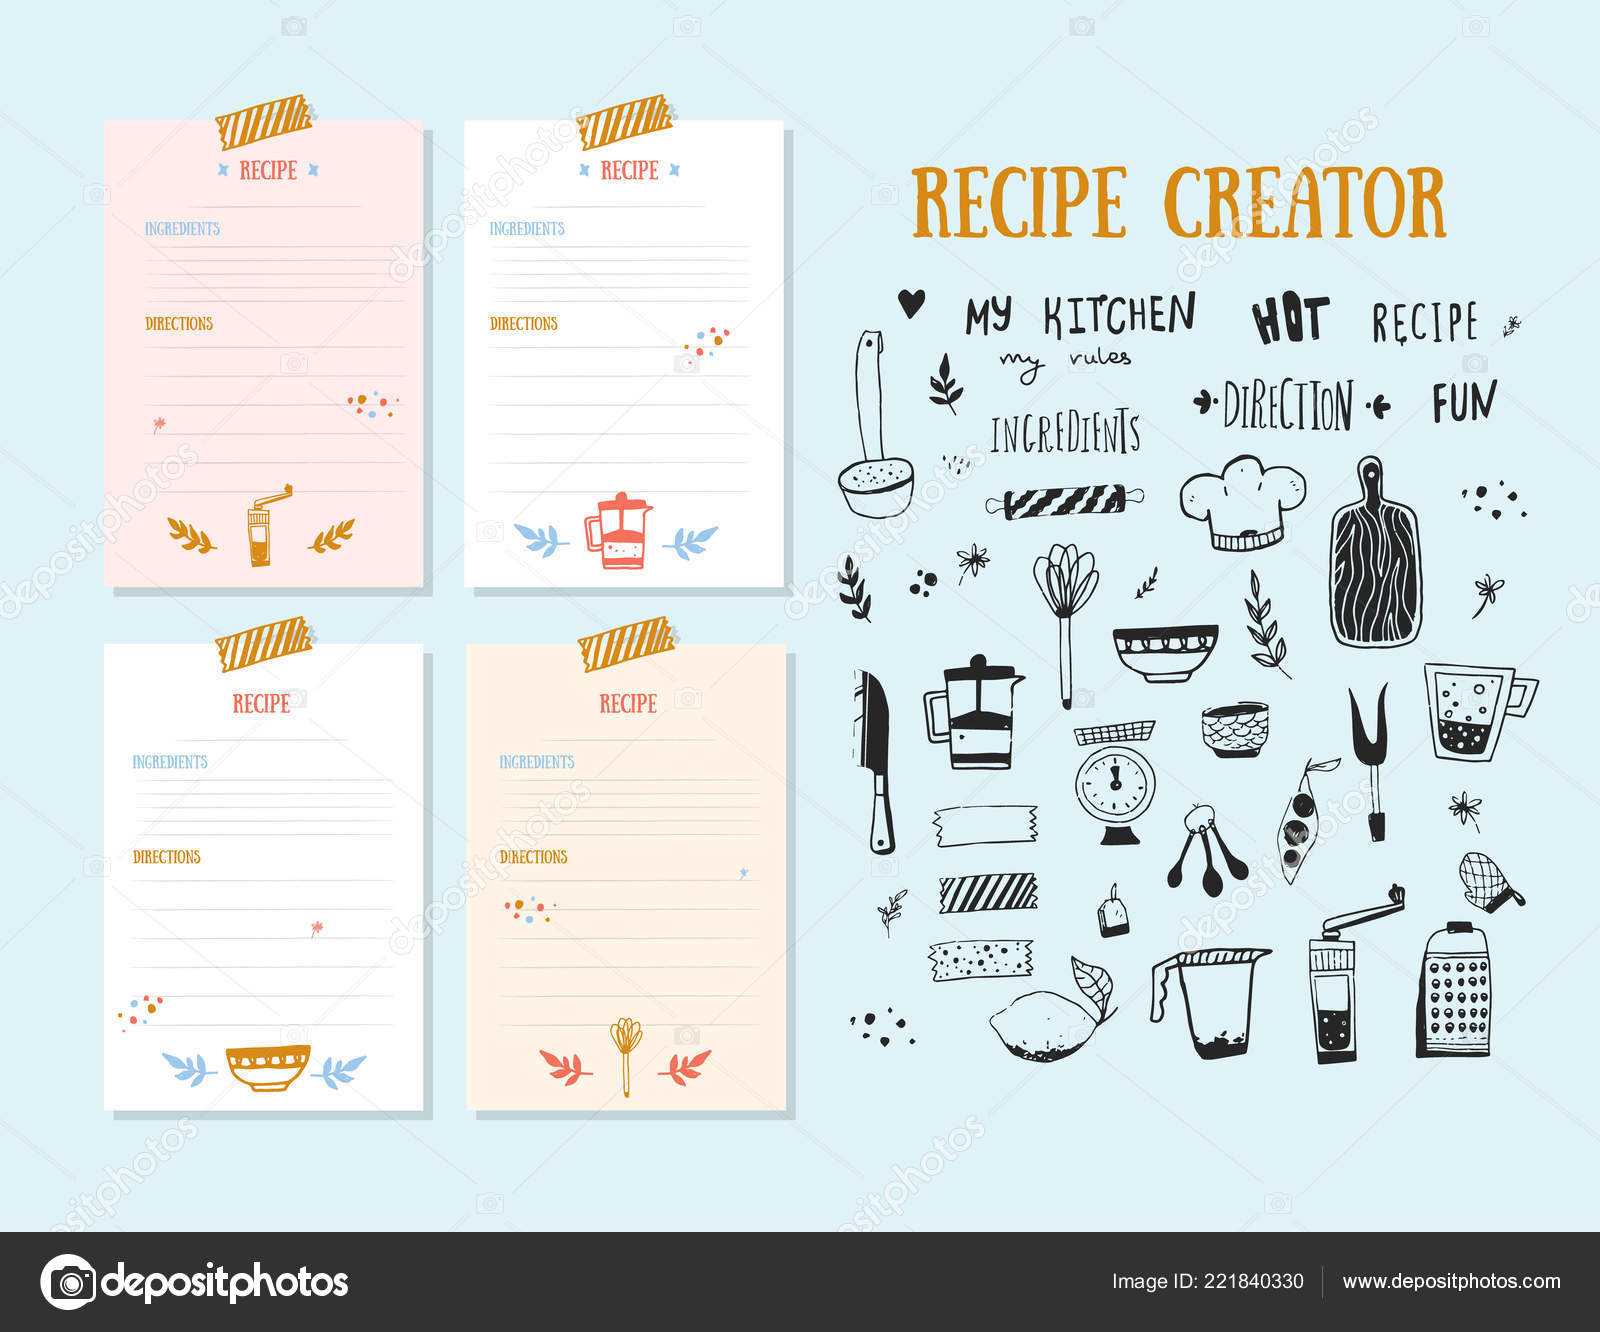 Cookbook Design Template | Modern Recipe Card Template Set Regarding Recipe Card Design Template